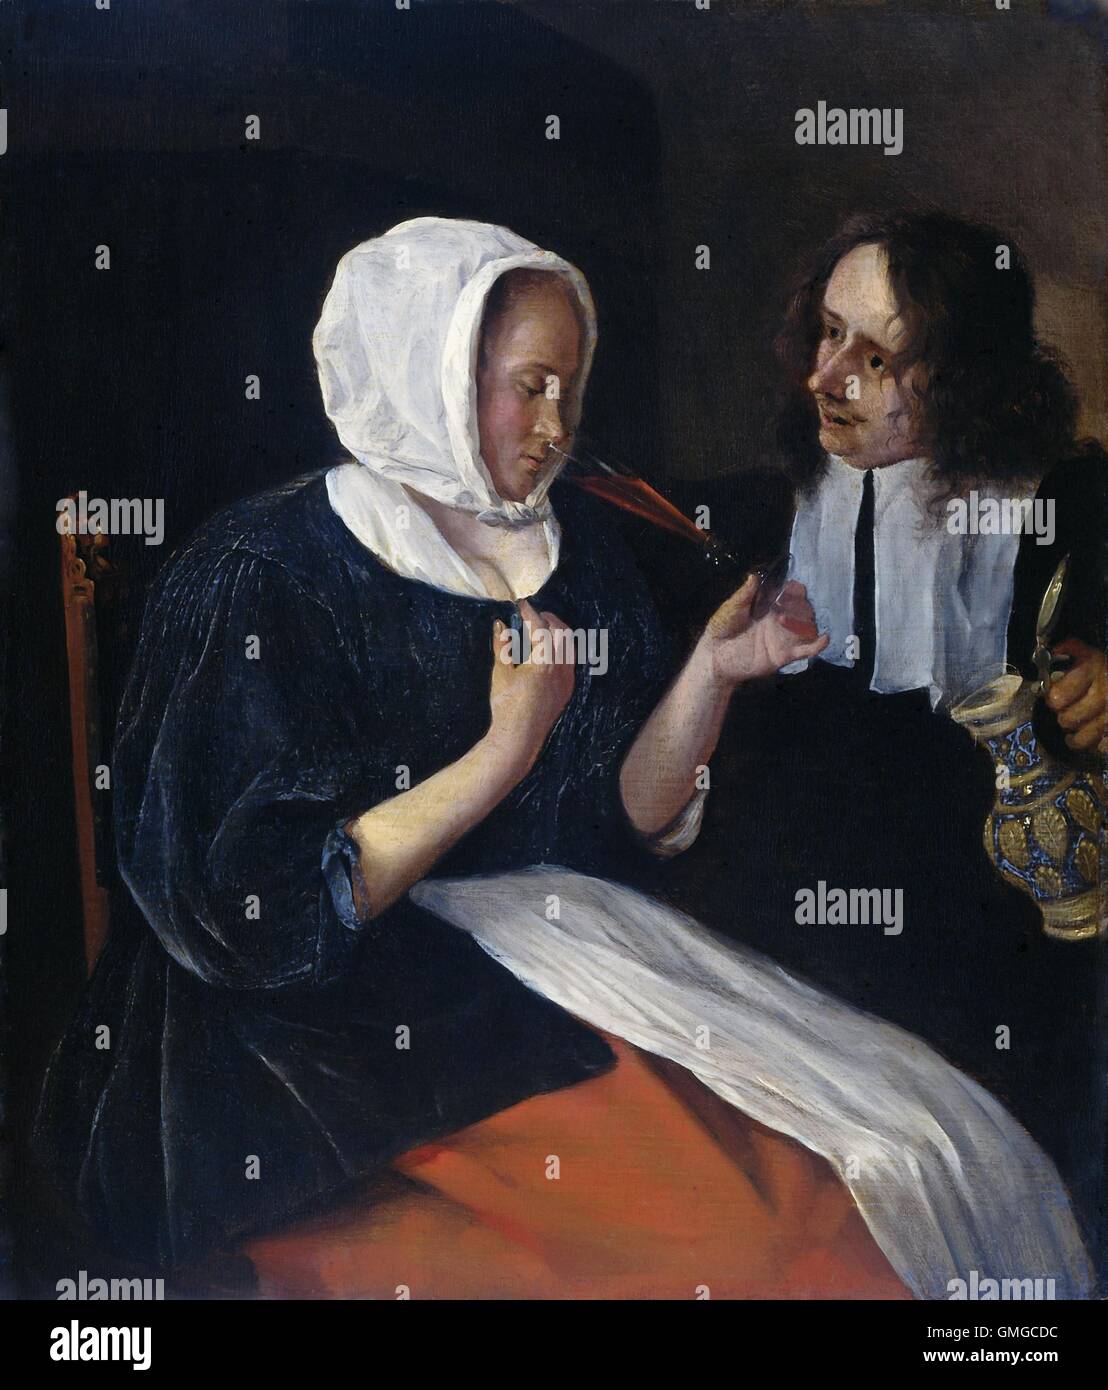 Un couple d'alcool, de Jan Steen, 1660-79, la peinture hollandaise, huile sur panneau. Un jeune homme avec une cruche de vin est assis à côté d'une jeune femme de prendre une gorgée d'une flûte en verre. Elle porte un tablier blanc et un foulard blanc (BSLOC 2016 3 250) Banque D'Images